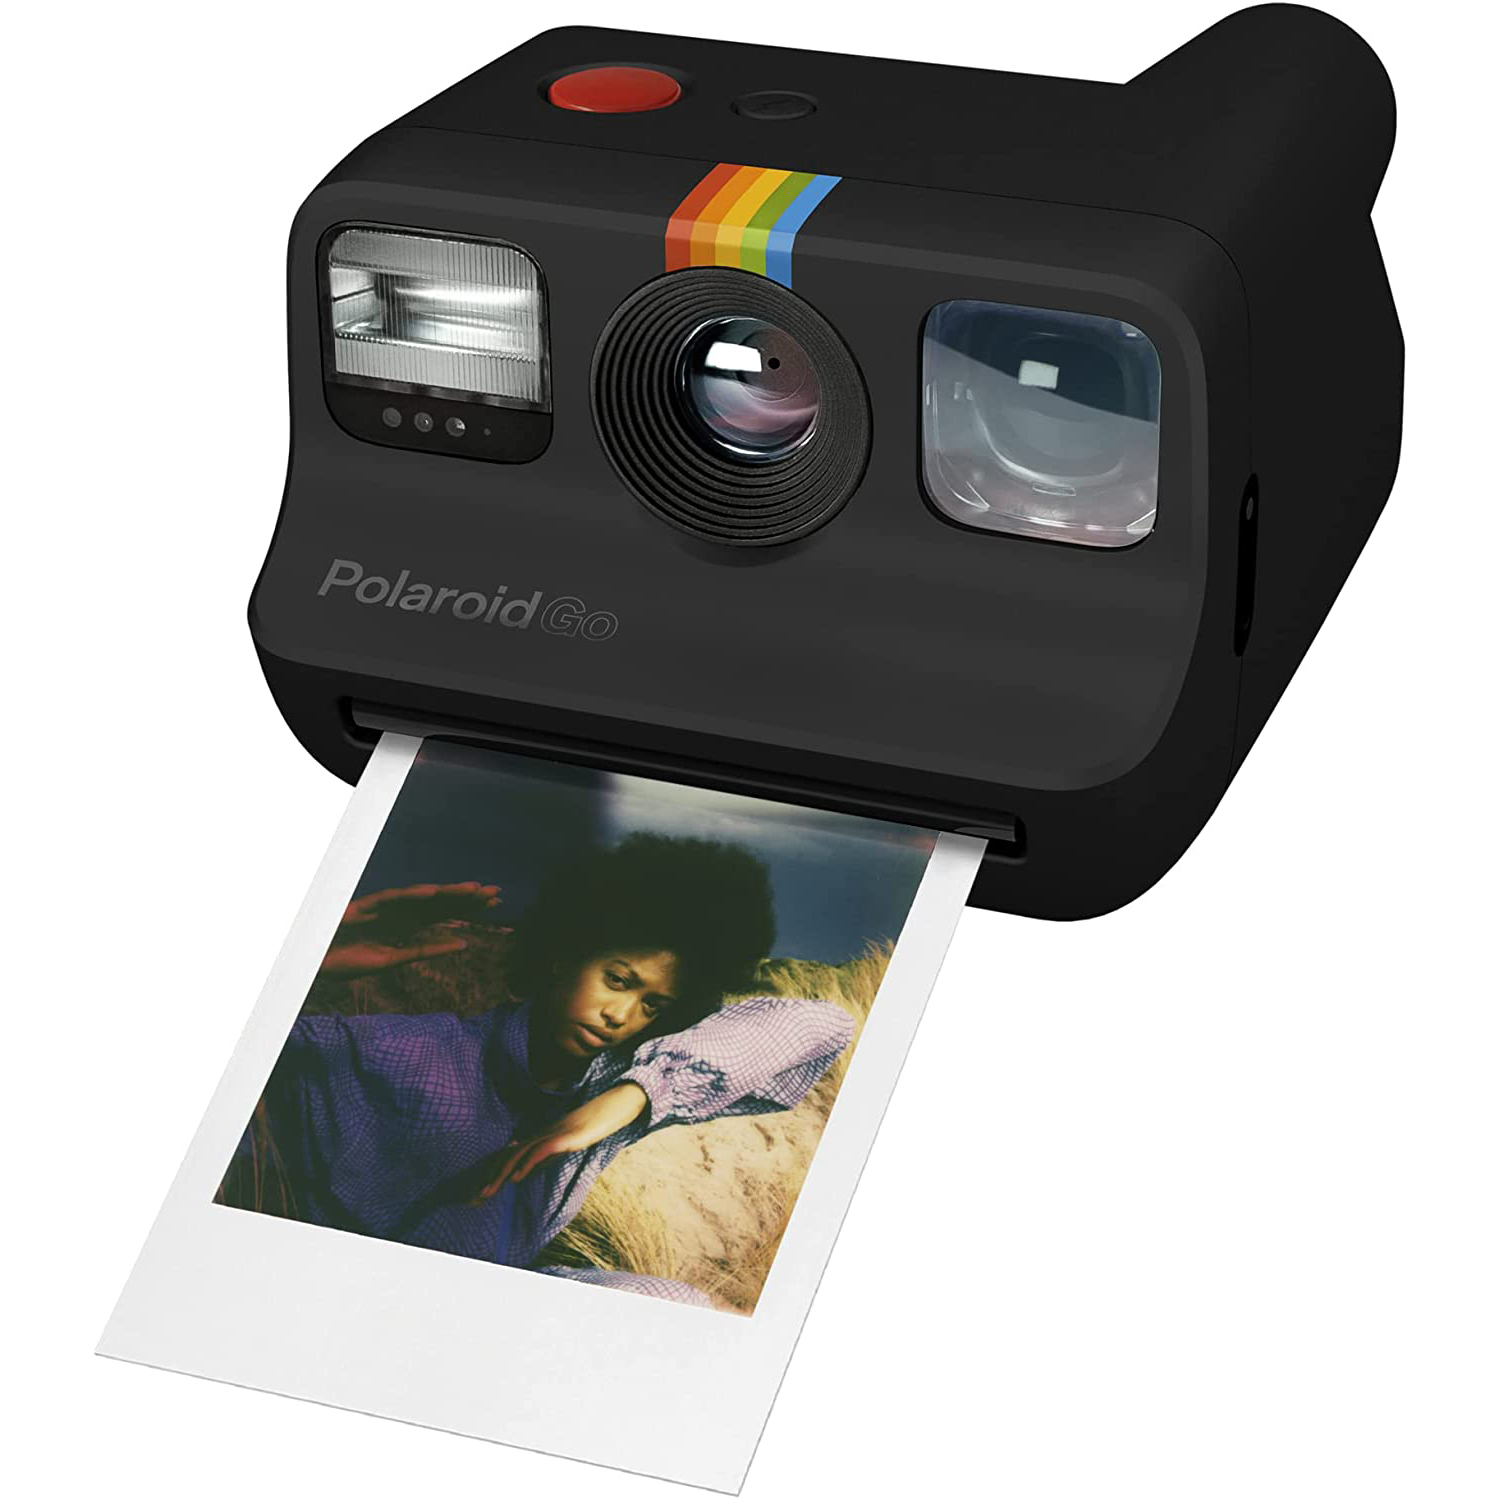 Instruere mesterværk eftermiddag Review: I Tried the Super-Tiny Polaroid Go Camera